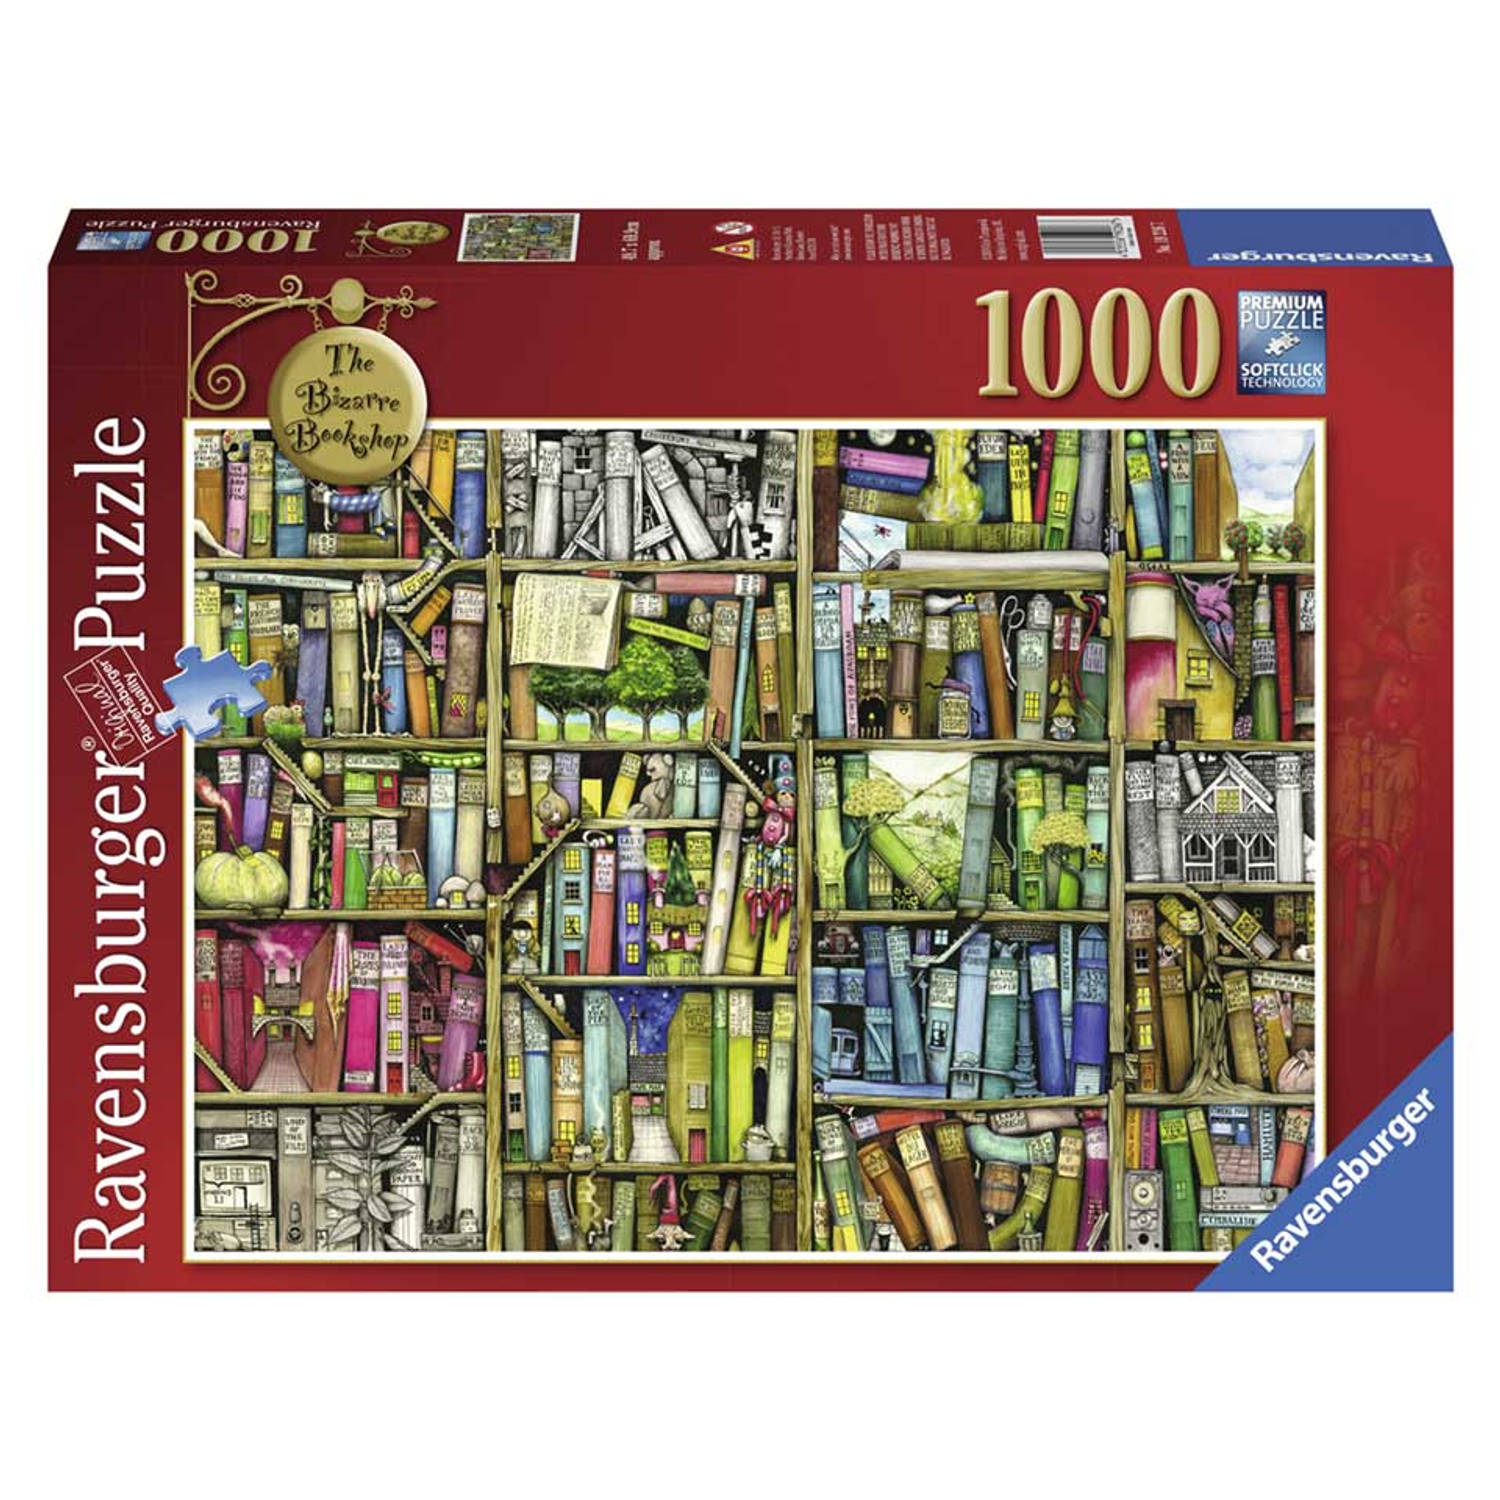 Ravensburger puzzel Colin Thompson The Bizarre Bookshop 1000 stukjes